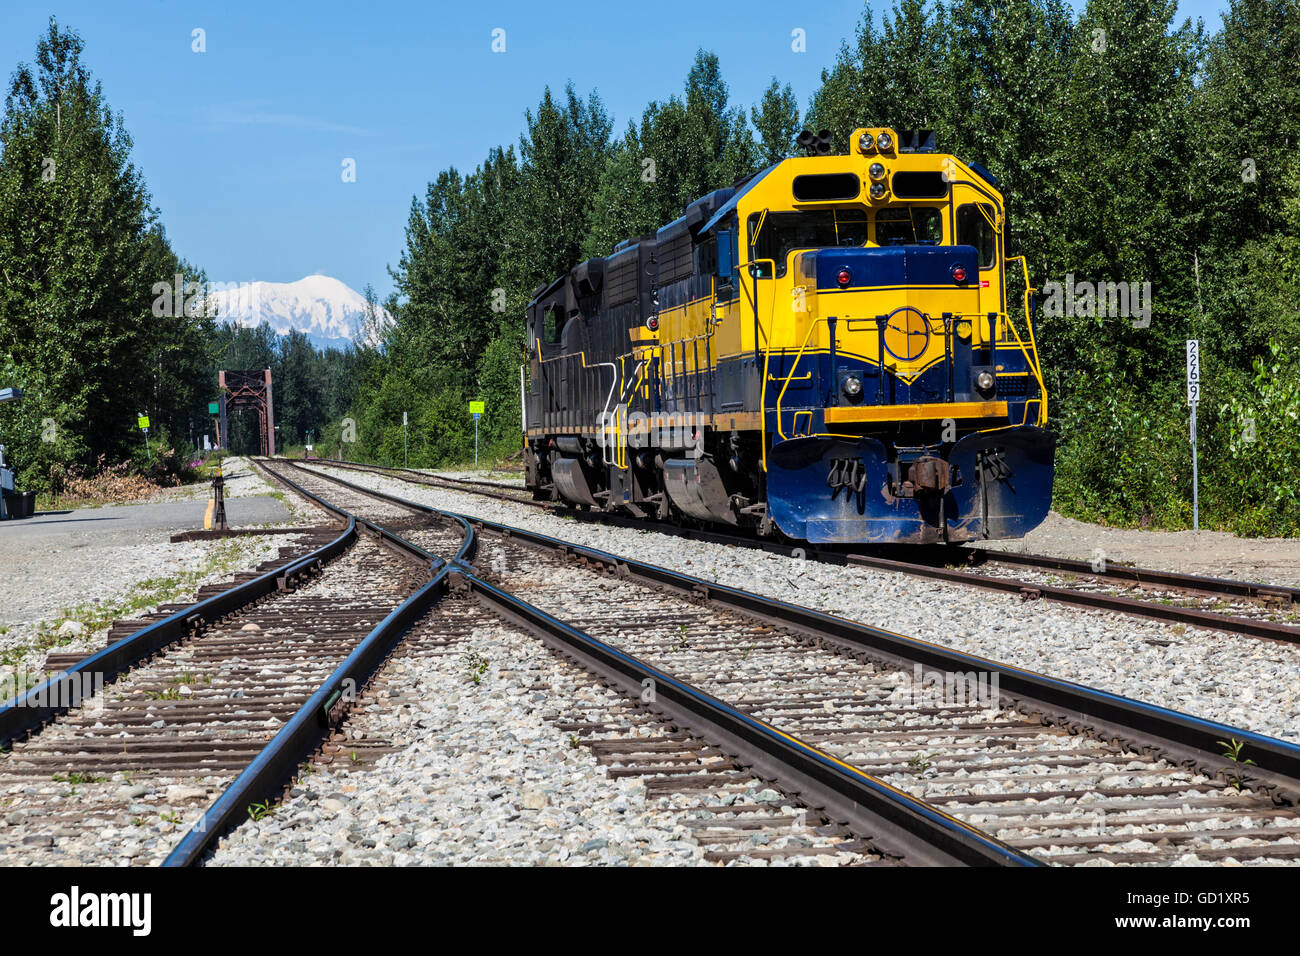 Diesel locomotive at Talkeetna in Alaska Stock Photo